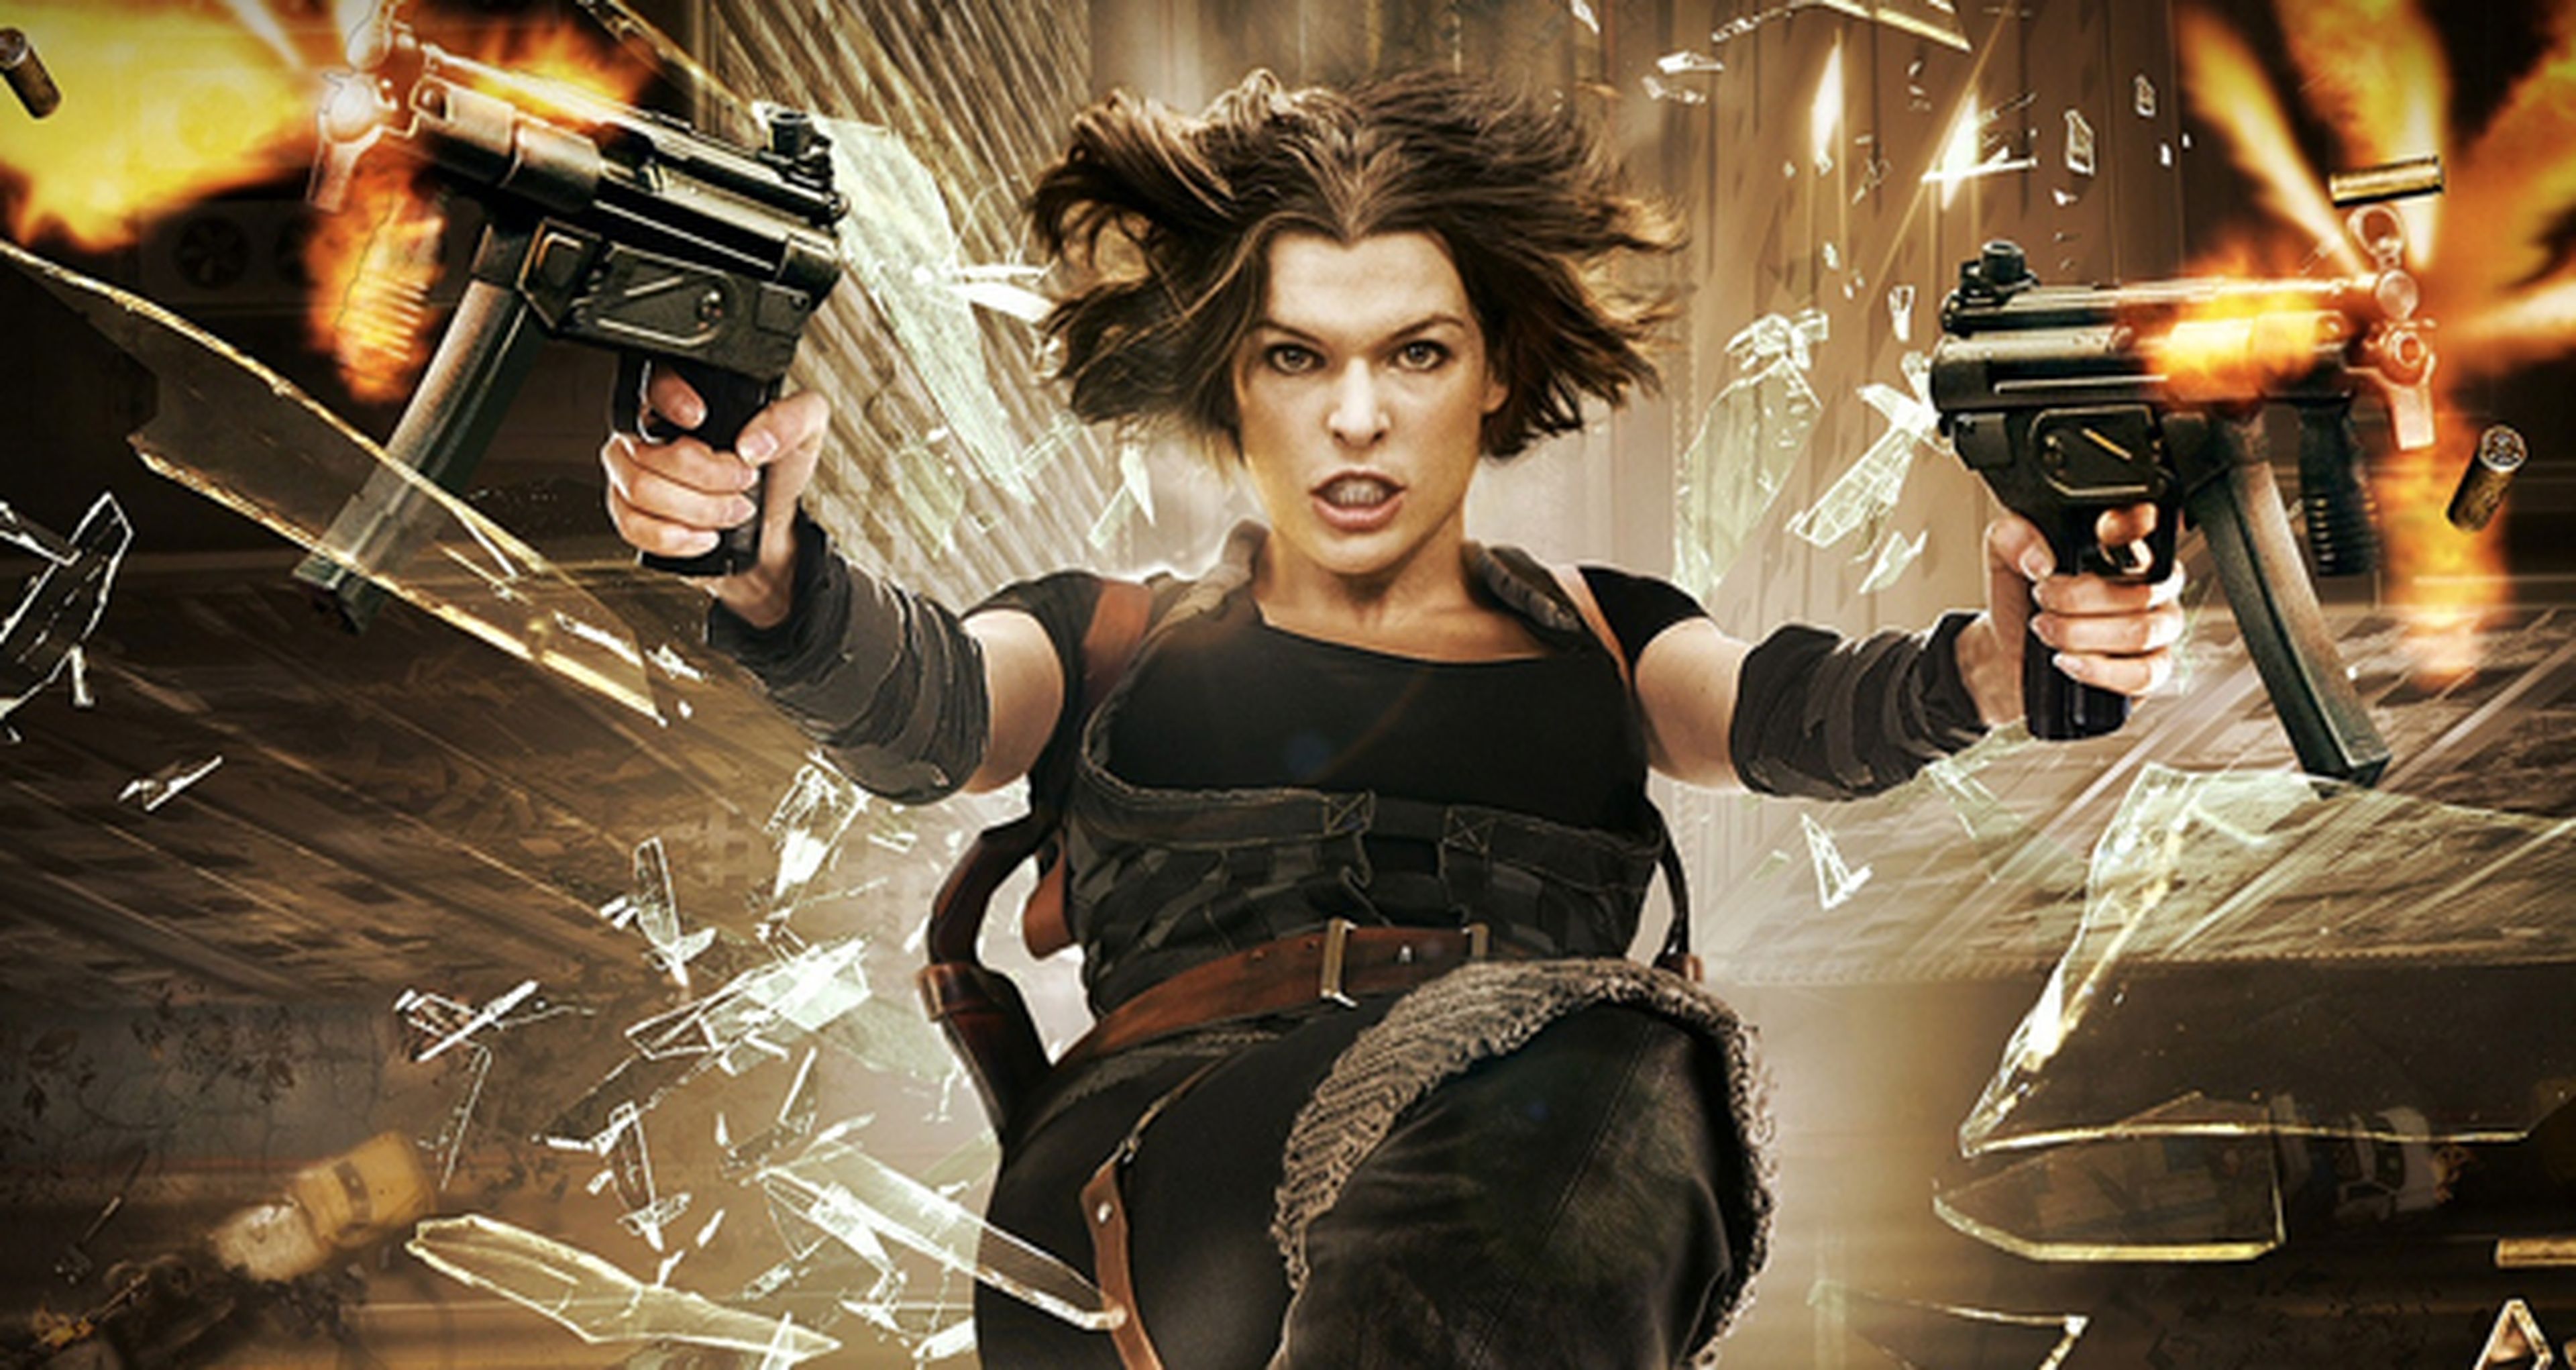 Anderson se planta con la película Resident Evil 6: será el final de la saga